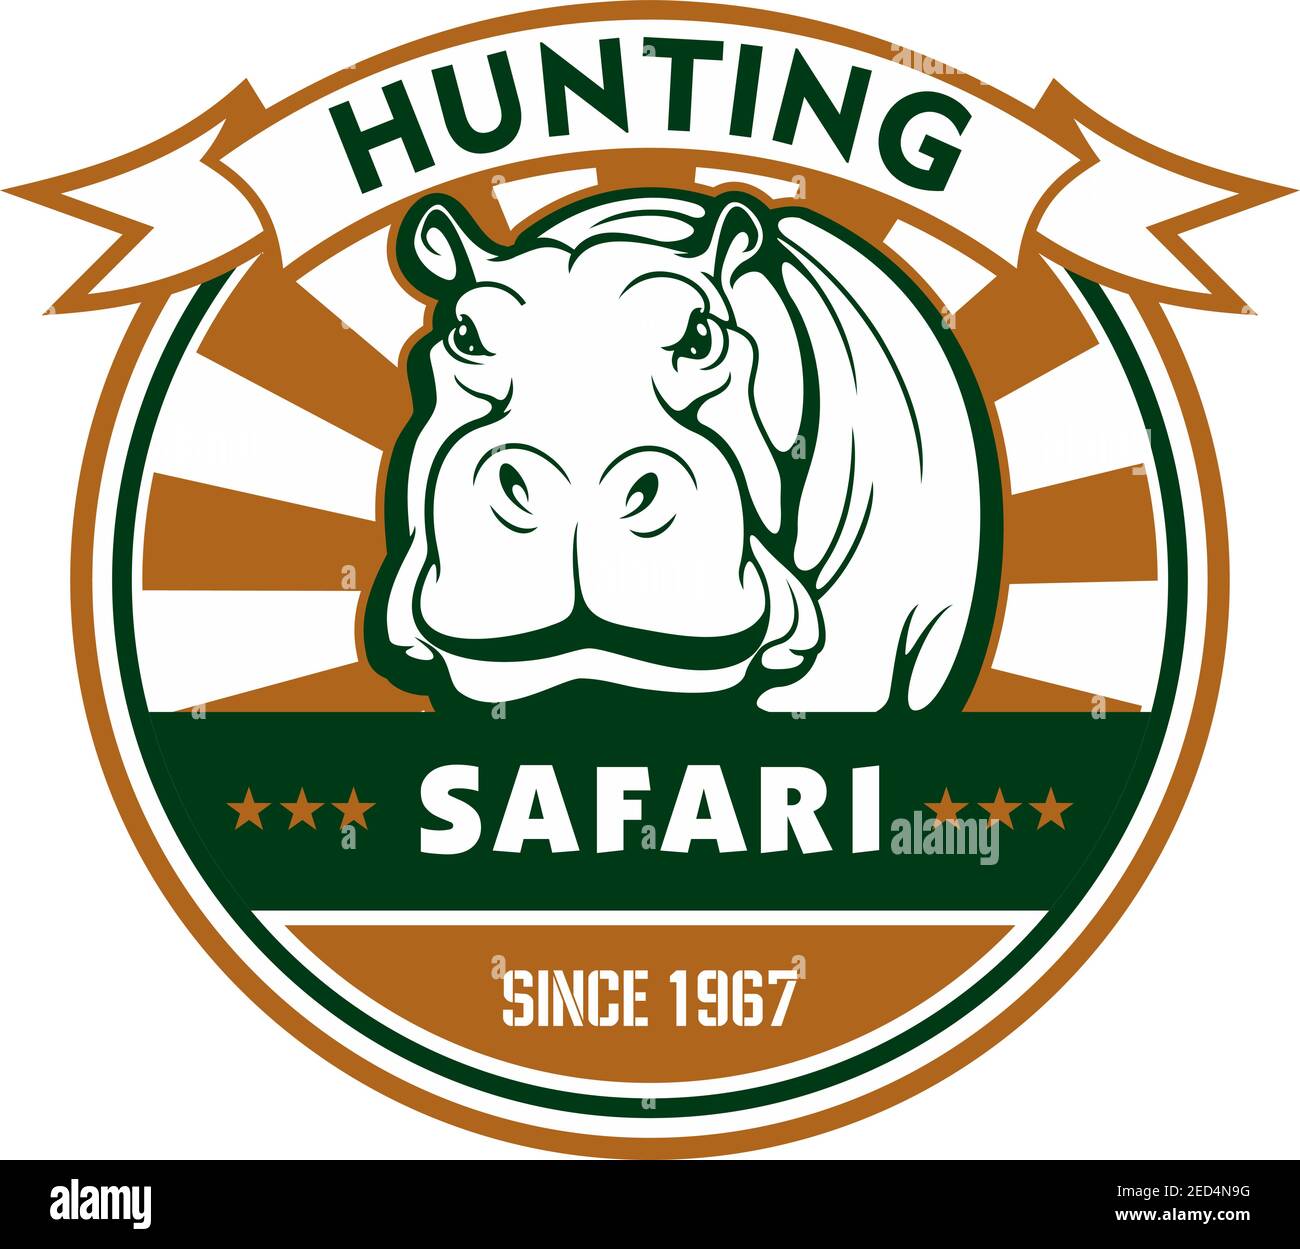 Symbole du sport de chasse et du safari africain. Hippo, encadré par un badge rond avec une bannière en ruban et une étoile. Safari, aventure en plein air et chasse sportive Illustration de Vecteur